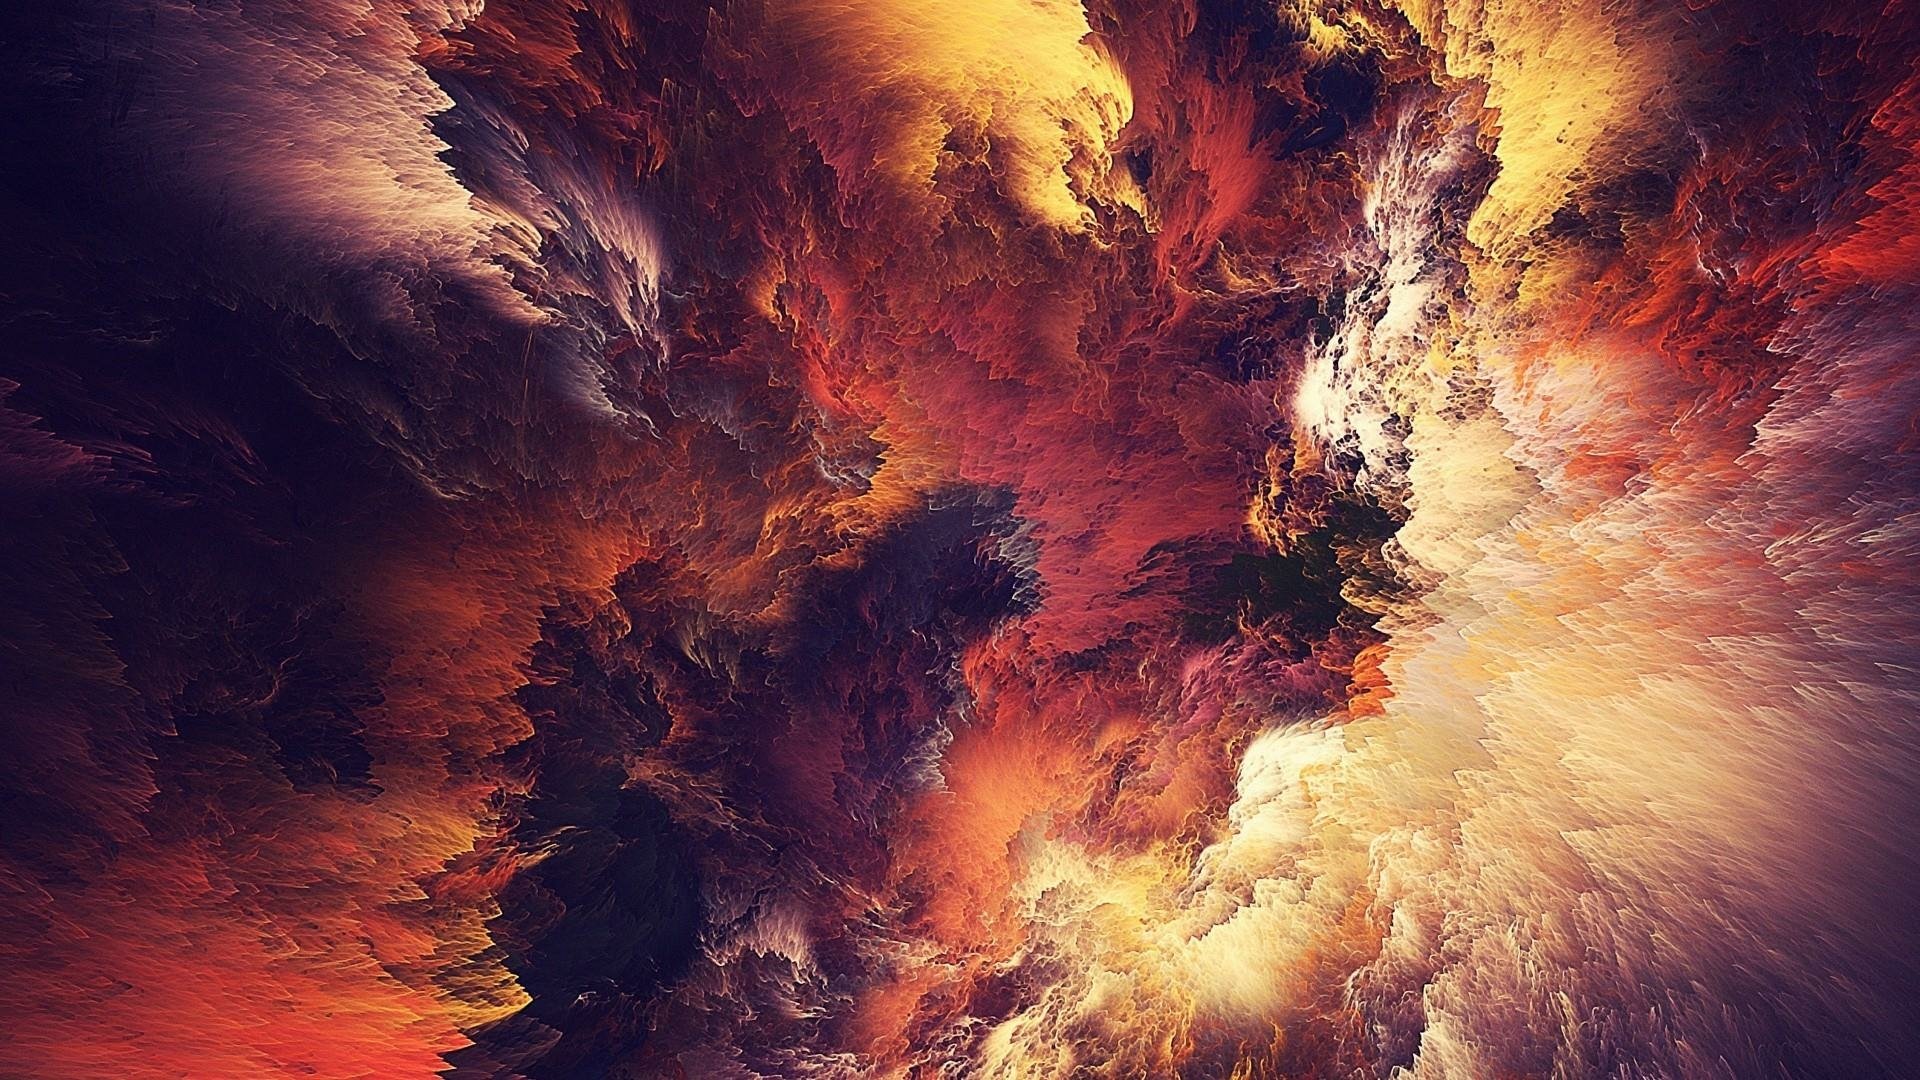 Artistic Cloud HD Wallpaper